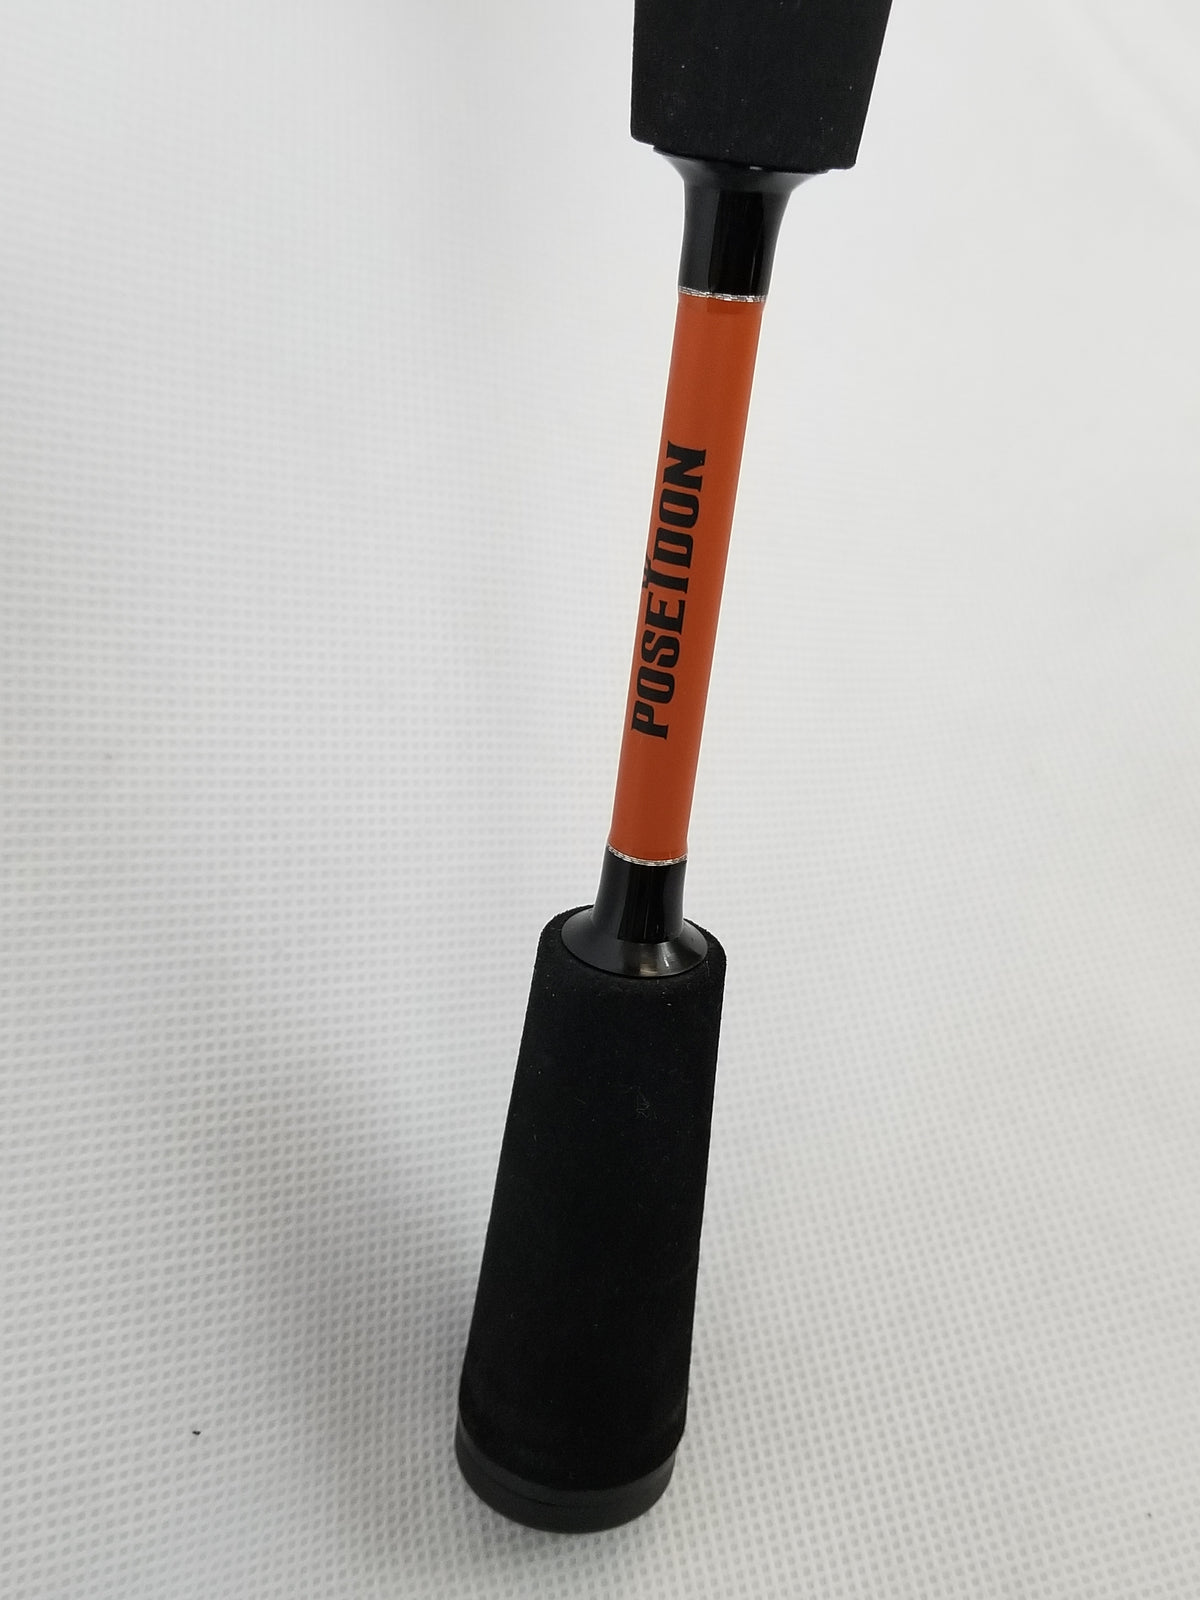 New Cam's "Orange Poseidon" Titanium Signature Series 6'6" Combo